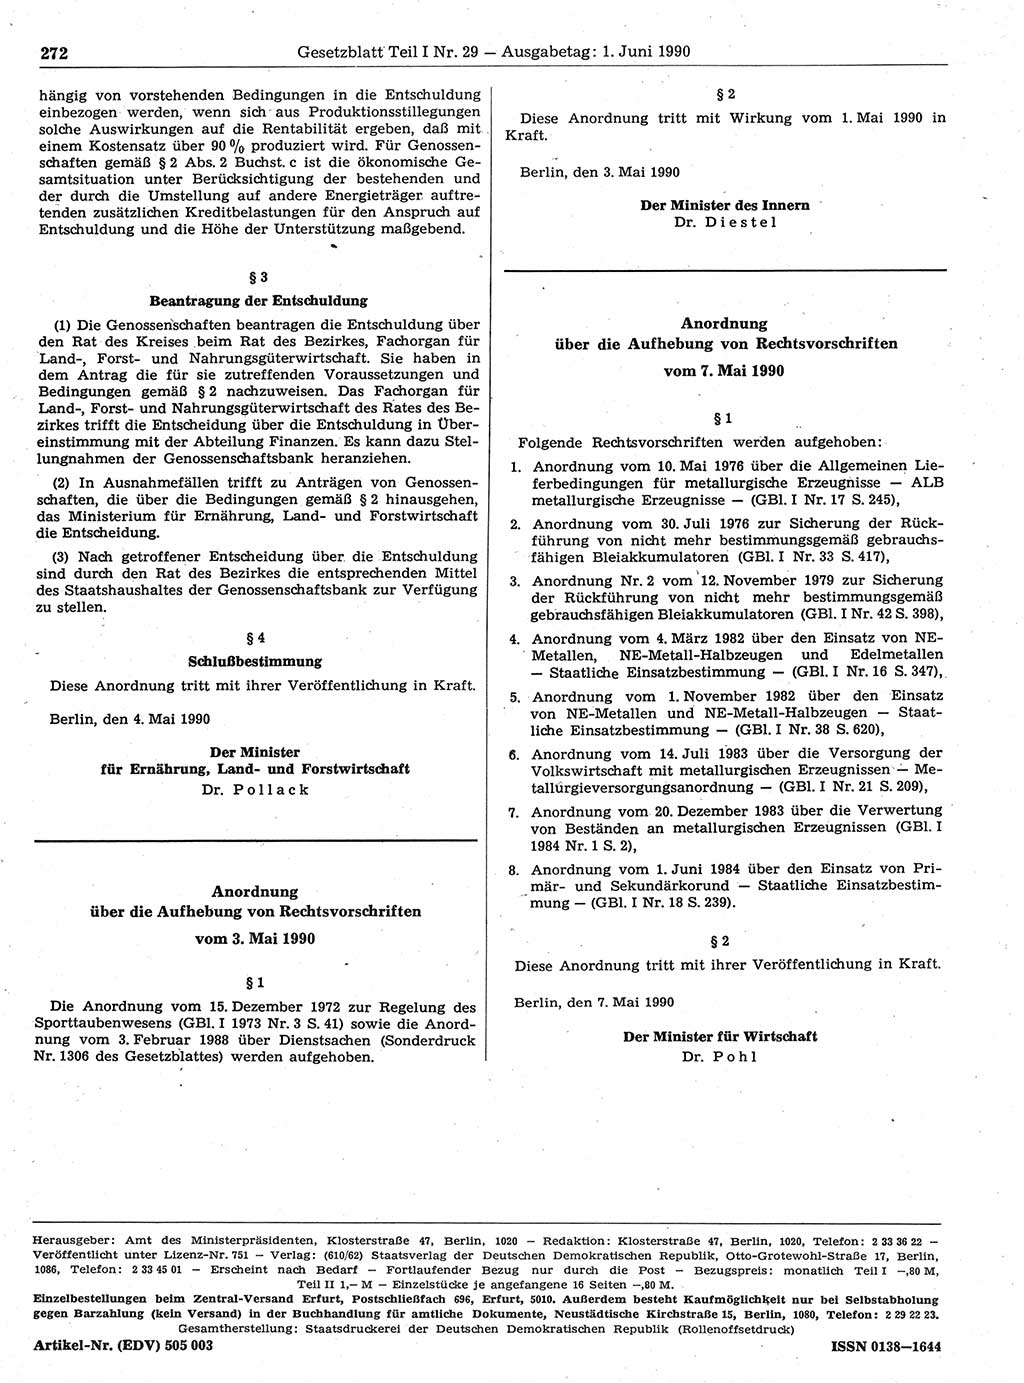 Gesetzblatt (GBl.) der Deutschen Demokratischen Republik (DDR) Teil Ⅰ 1990, Seite 272 (GBl. DDR Ⅰ 1990, S. 272)